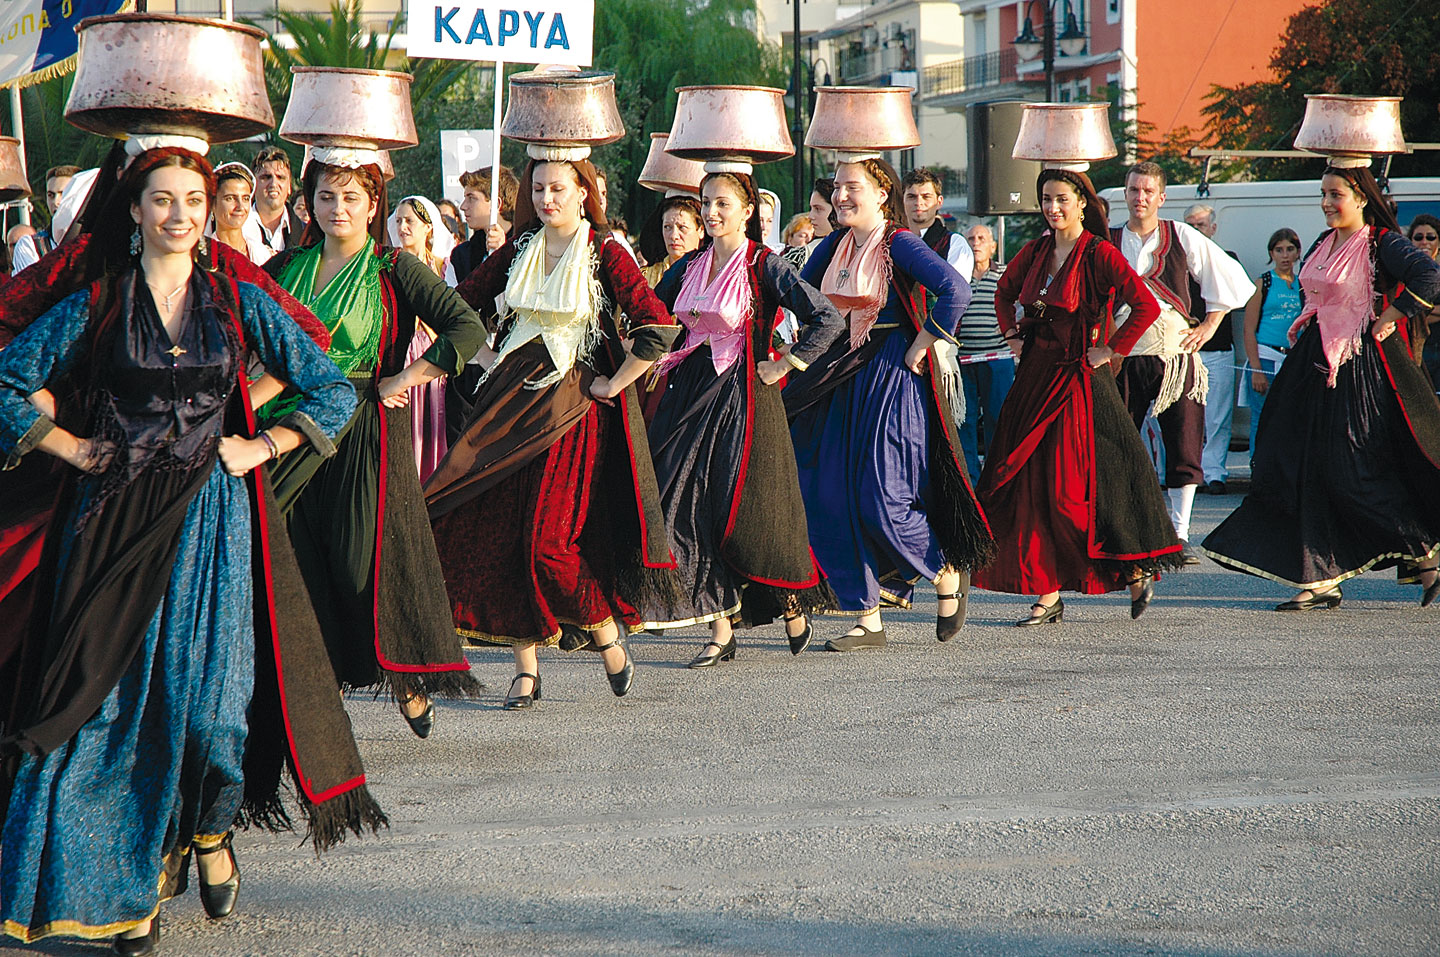 Χορευτικός σύλλογος της Καρυάς Λευκάδας | Διεθνές Φεστιβάλ Φολκλορ